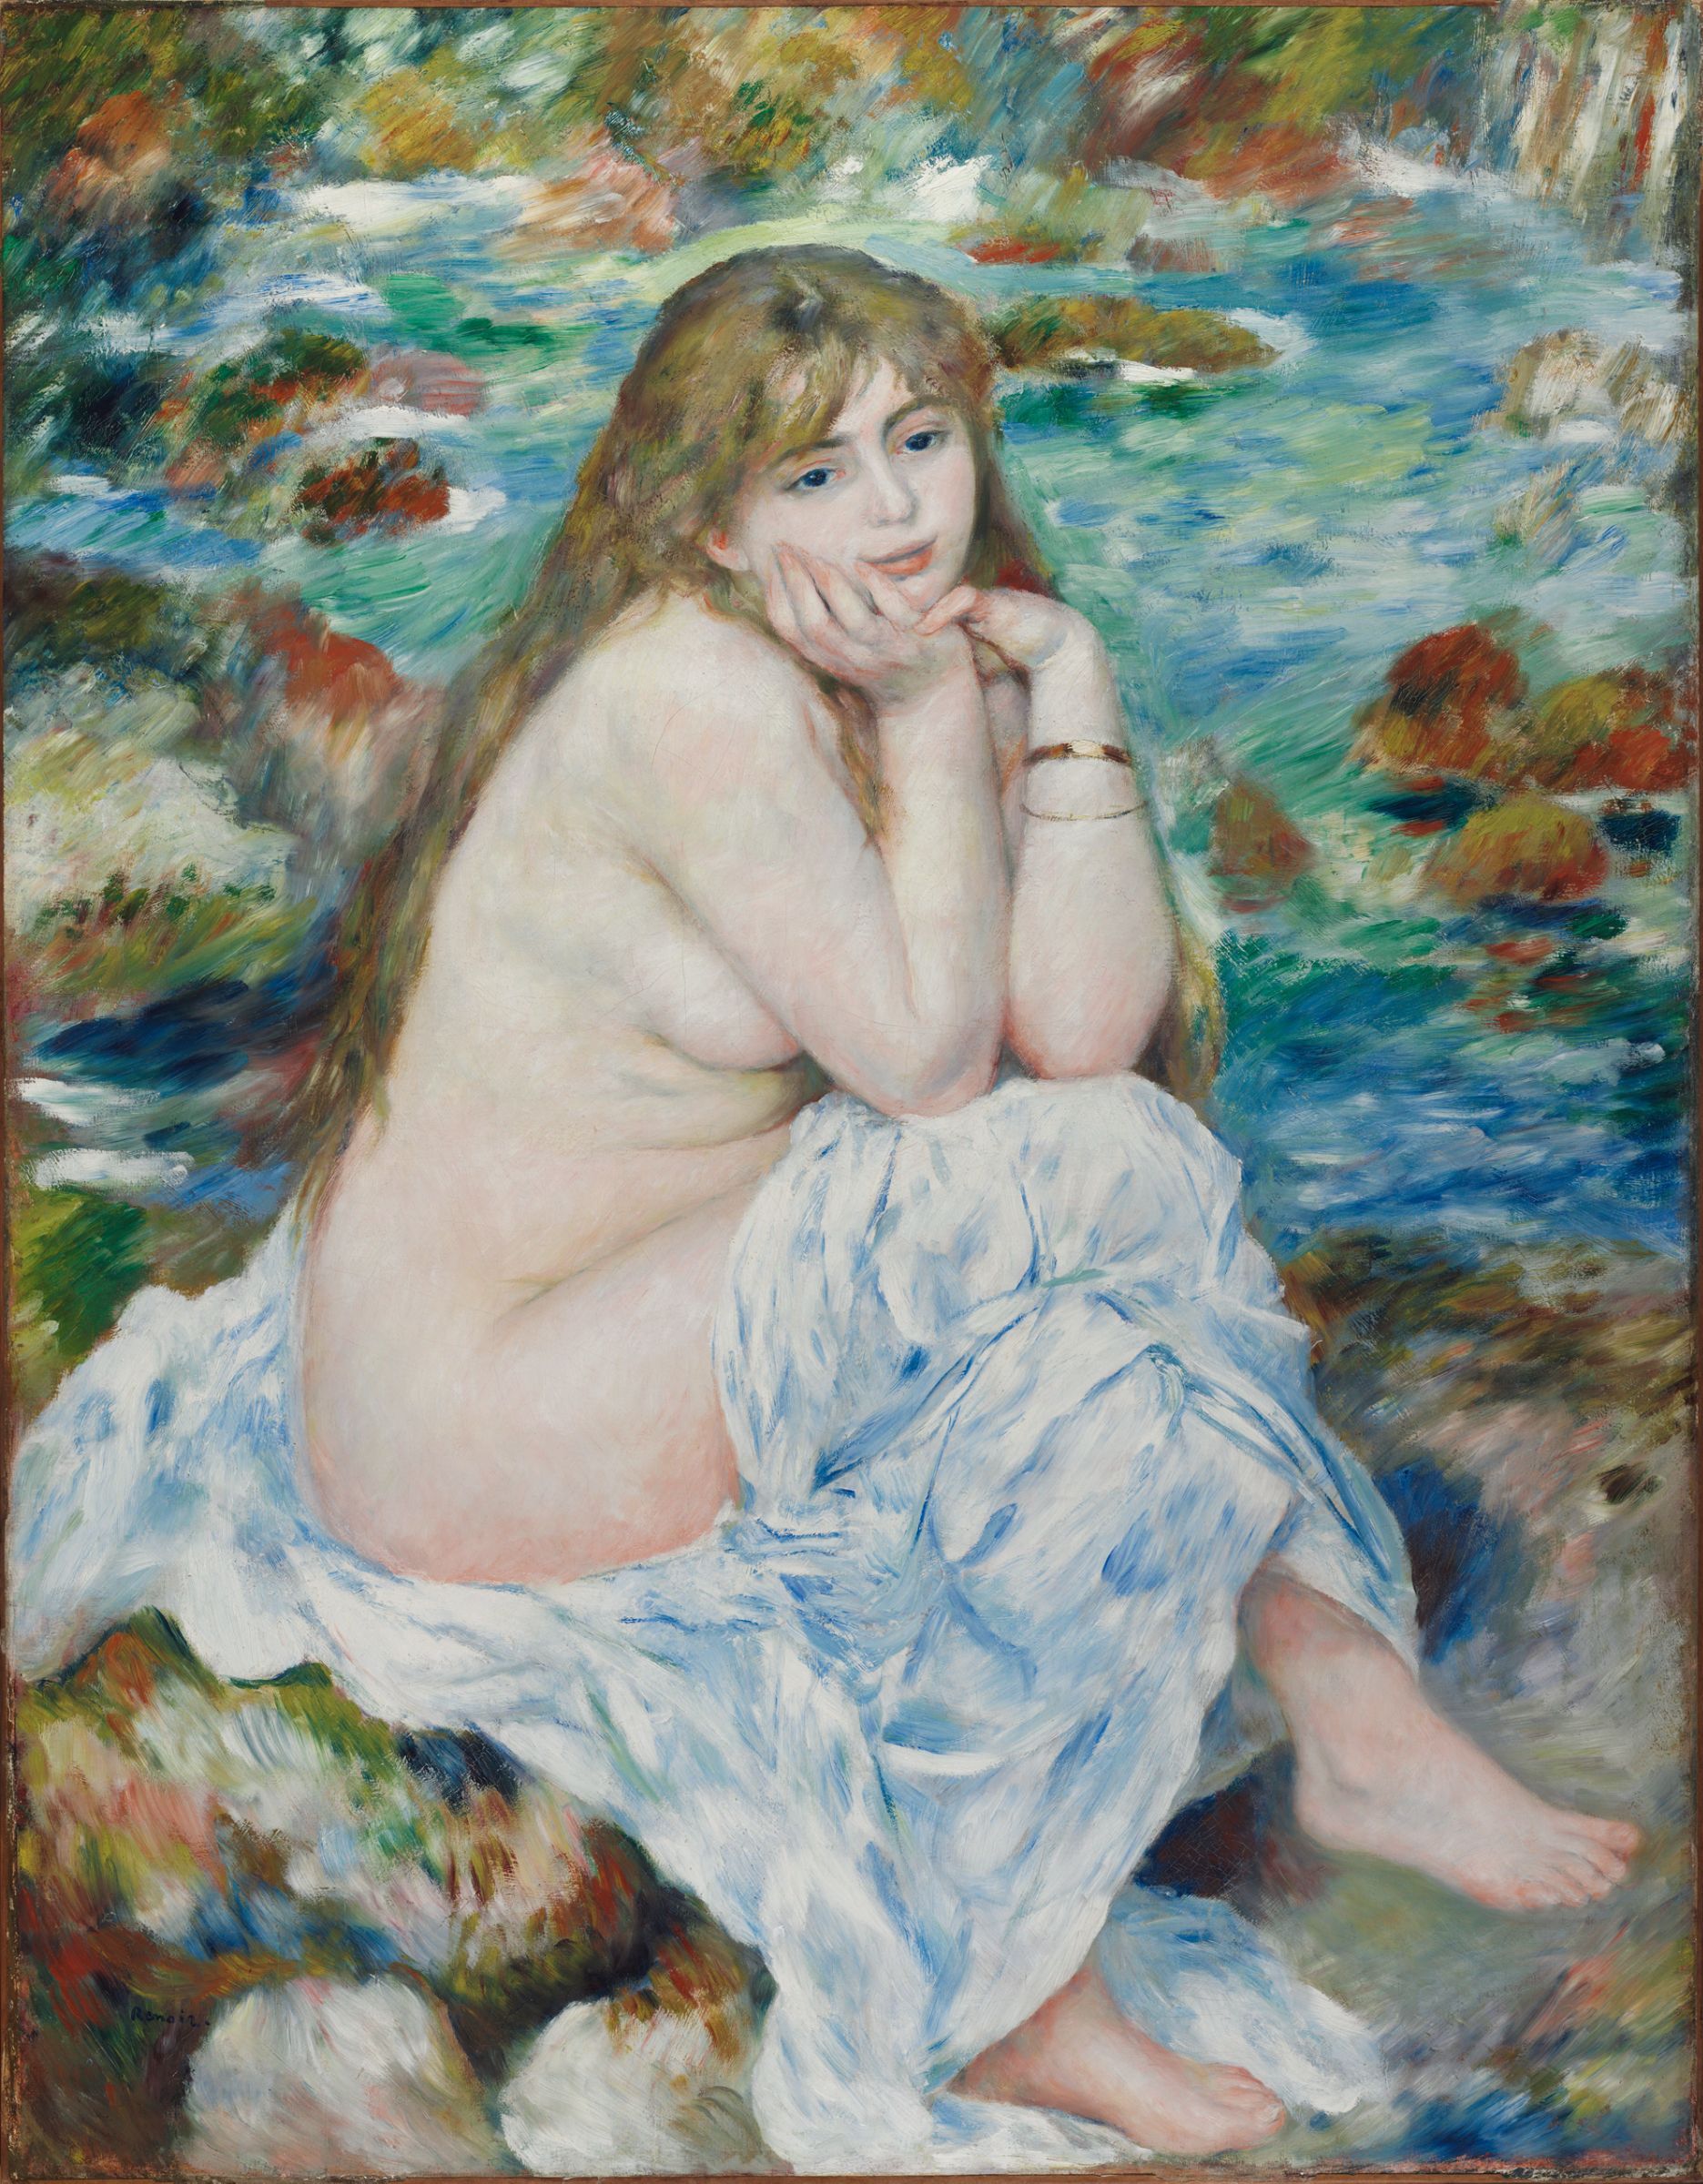 Sitzende Badende by Pierre-Auguste Renoir - ca. 1883-1884 - 93.0 x 119.7 cm Harvard Art Museums